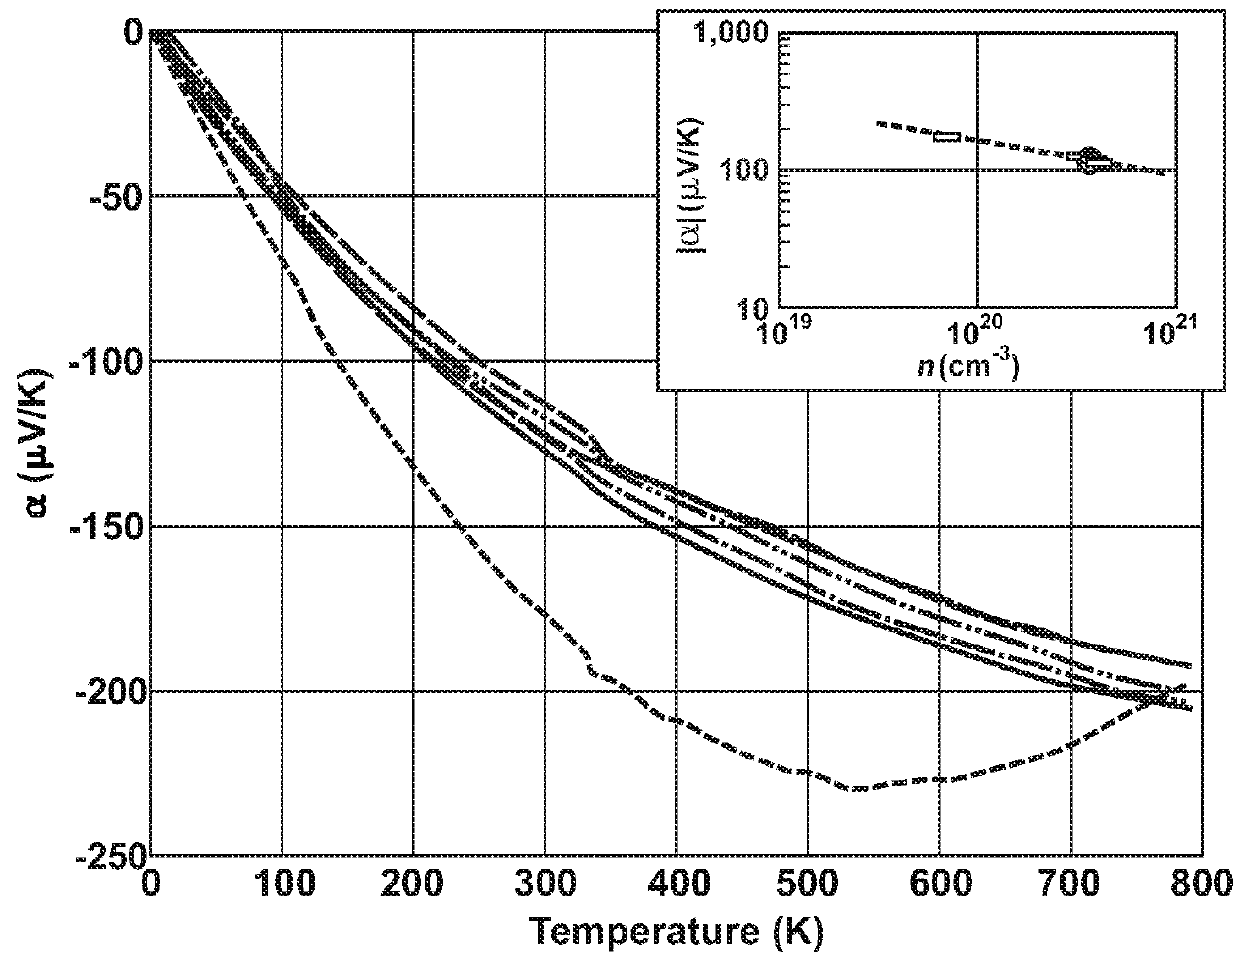 Thermoelectric performance of calcium and calcium-cerium filled n-type skutterudites